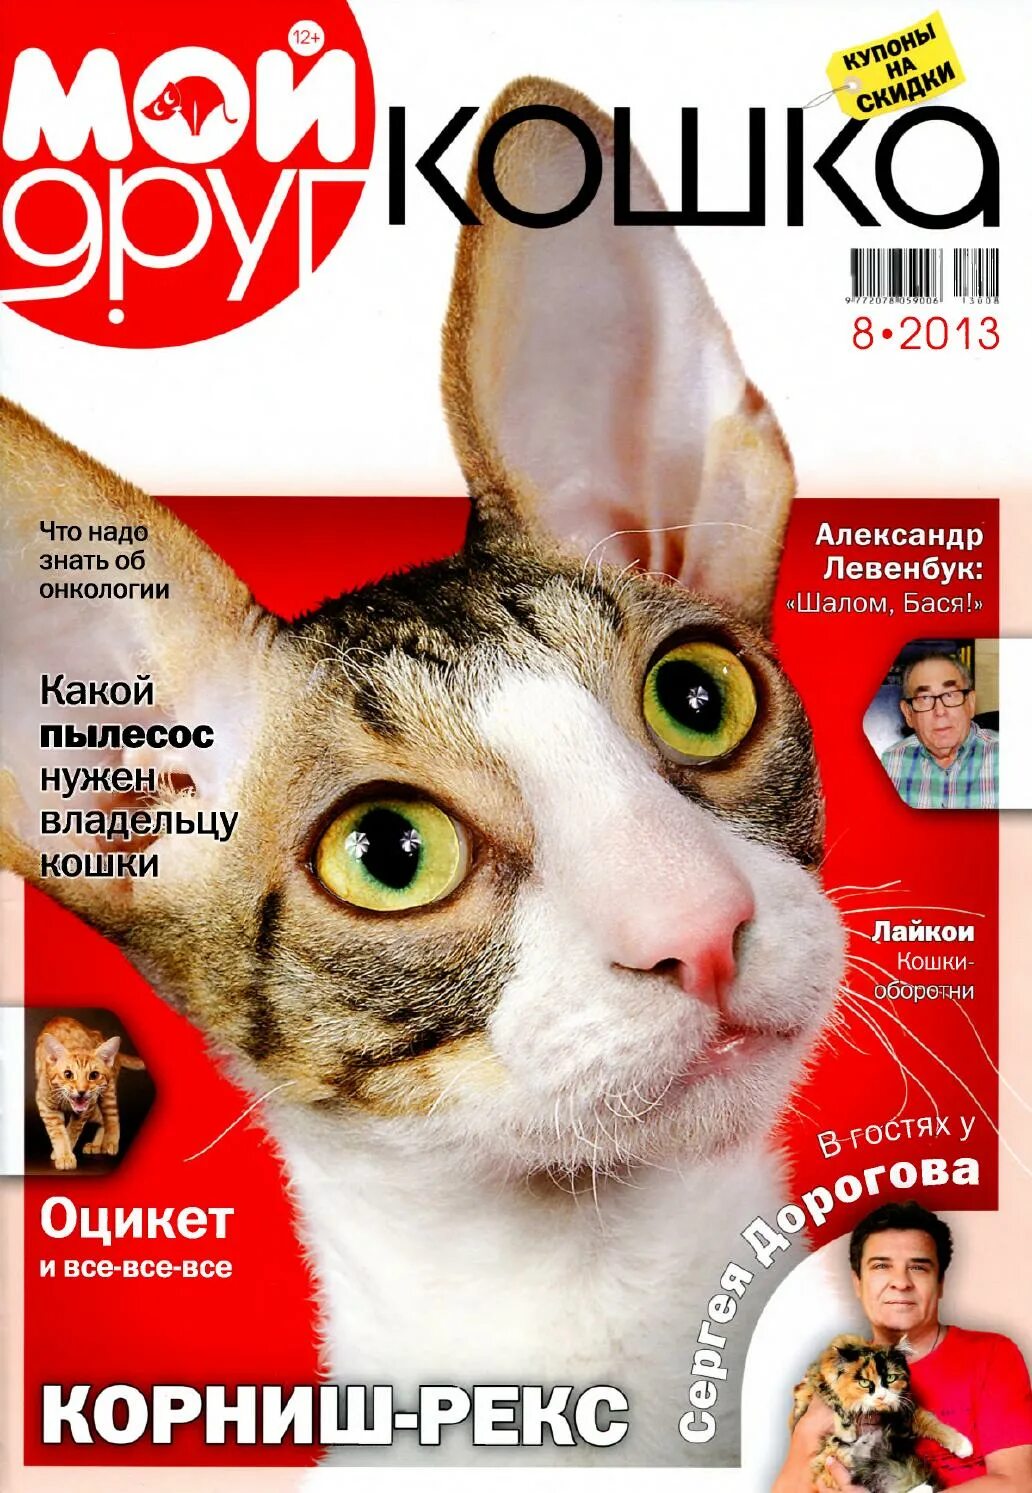 Сайт журнала друг. Журнал про кошек. Кошачий журнал. Журнал друг кошек 2013 год. Журнал друг для любителей кошек.